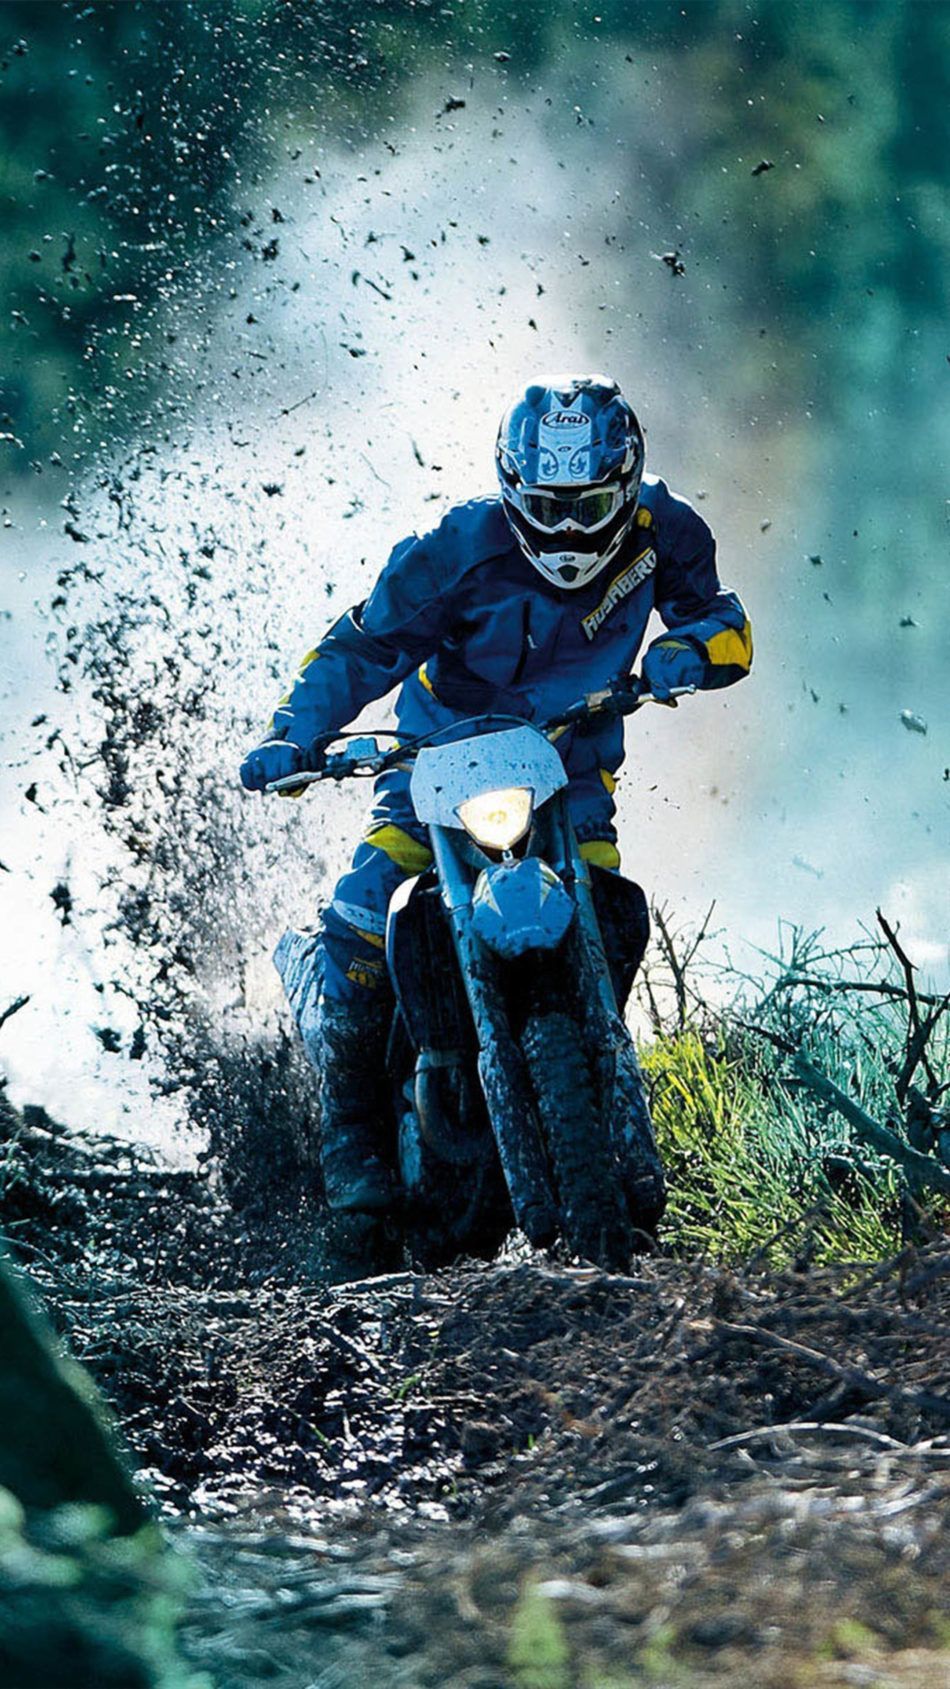 Drift Dirt Bike Race 4K Ultra HD Mobile Wallpaper. Racing bikes, Ktm motocross, Motocross